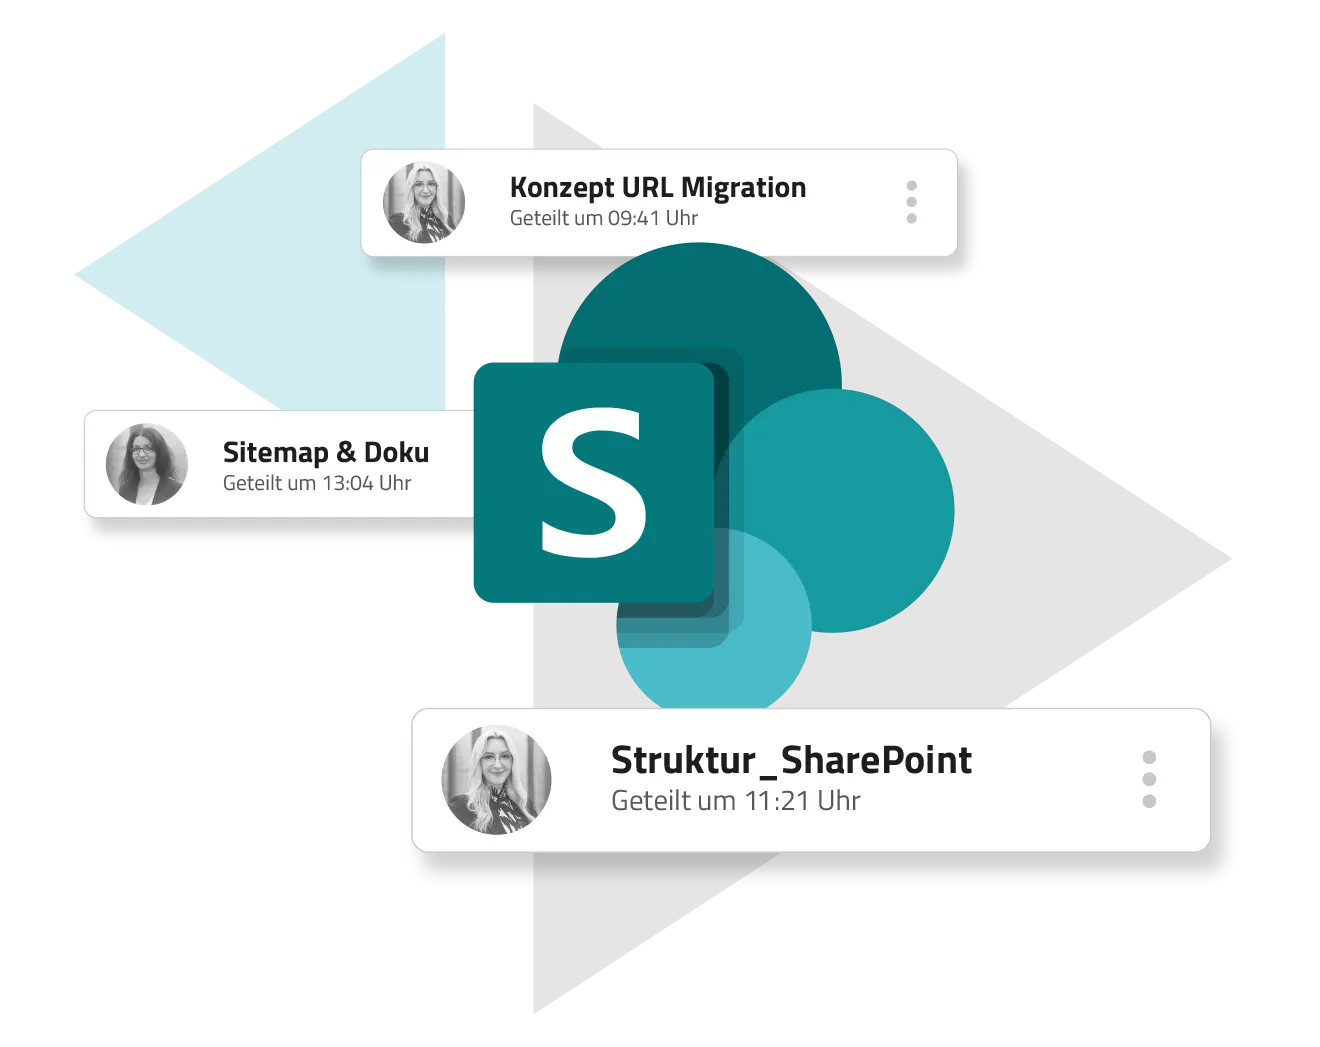 SharePoint-Oberfläche, die freigegebene Dokumente mit Zeitstempeln anzeigt und die Funktionen zur Zusammenarbeit in Microsoft 365 hervorhebt.